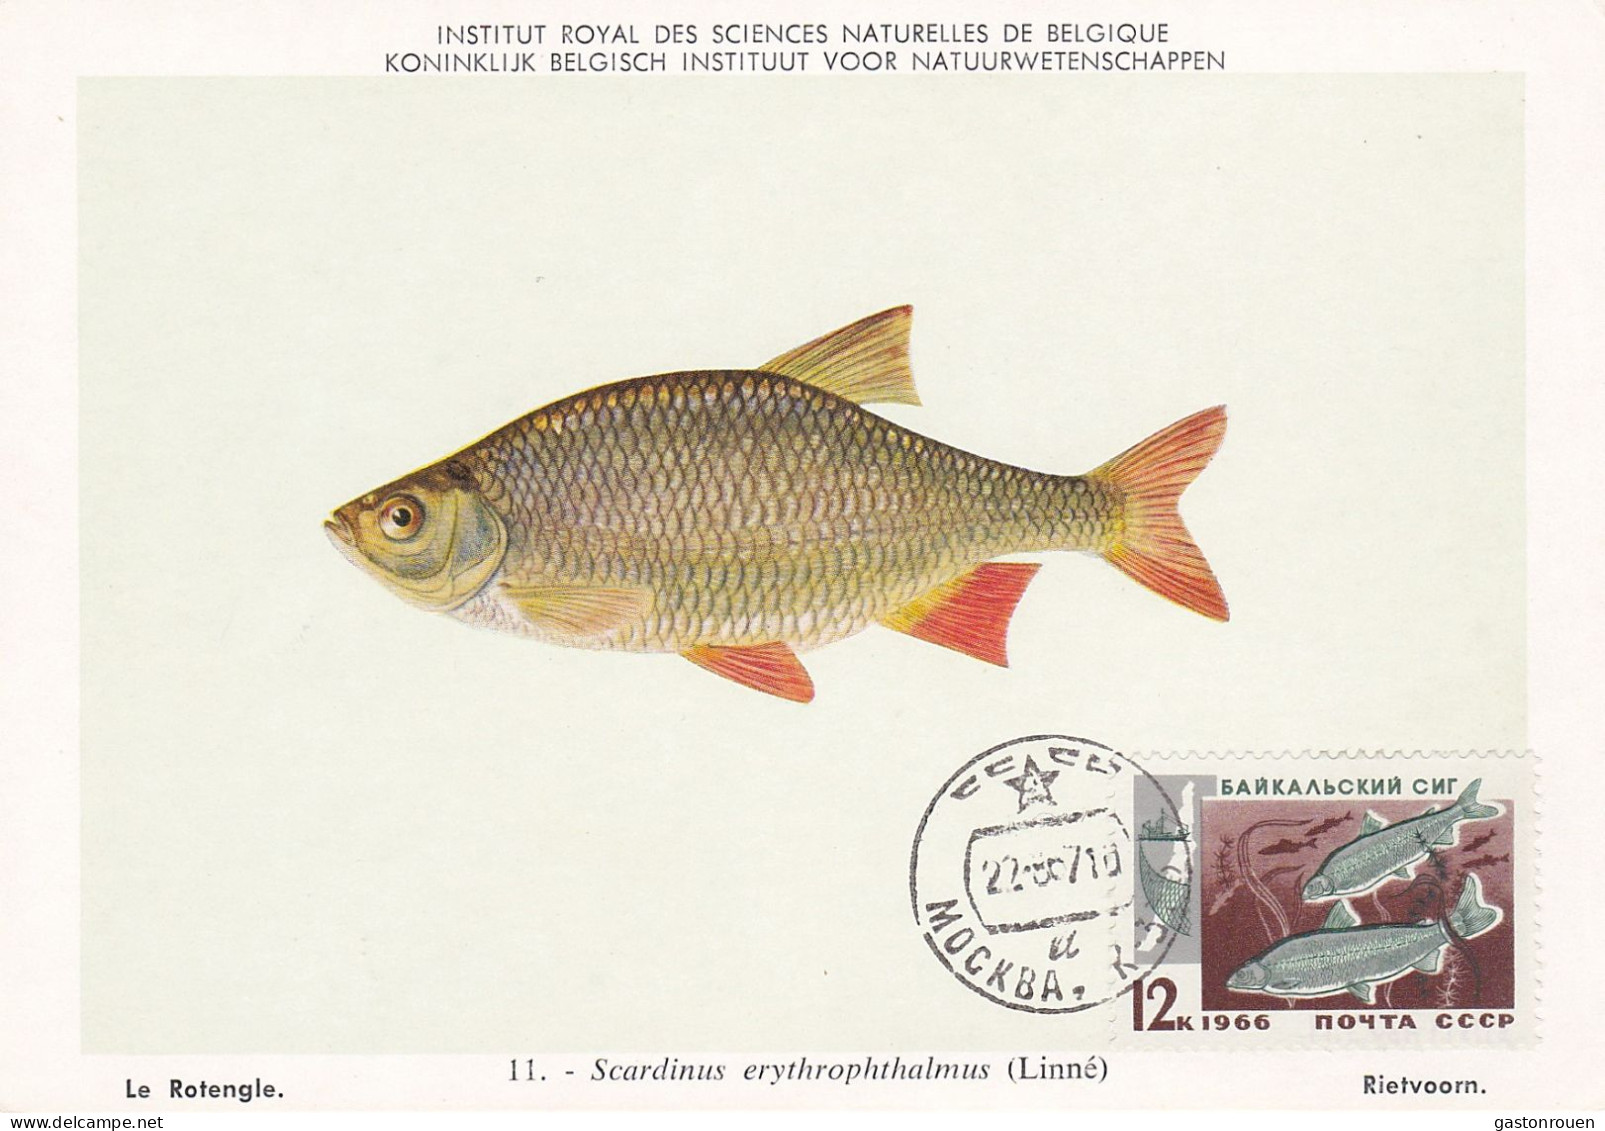 Carte Maximum URSS Russie Russia Poisson Fish 6610 - Maximumkarten